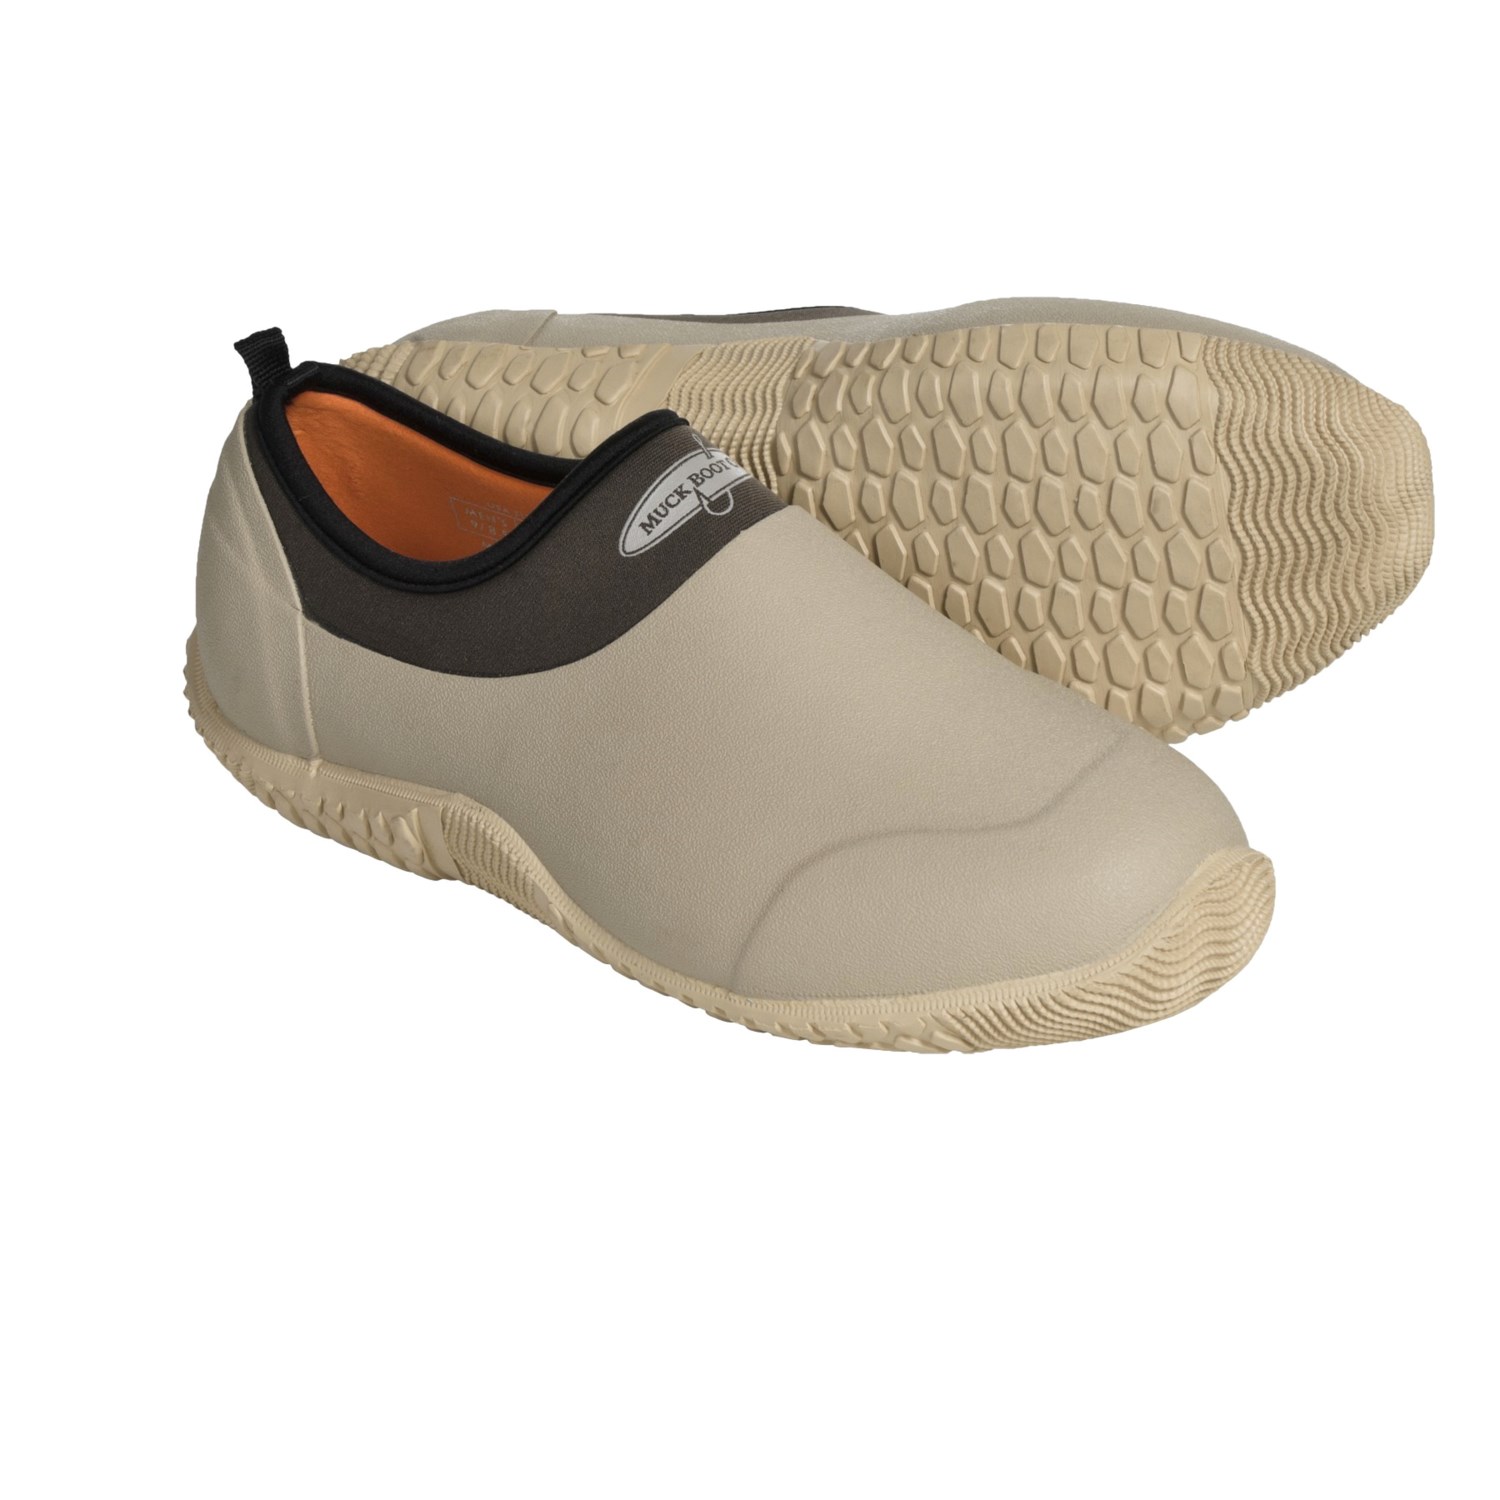 Muck Boot Company Cikana Fishing Shoes - Waterproof (For Men and Women ...